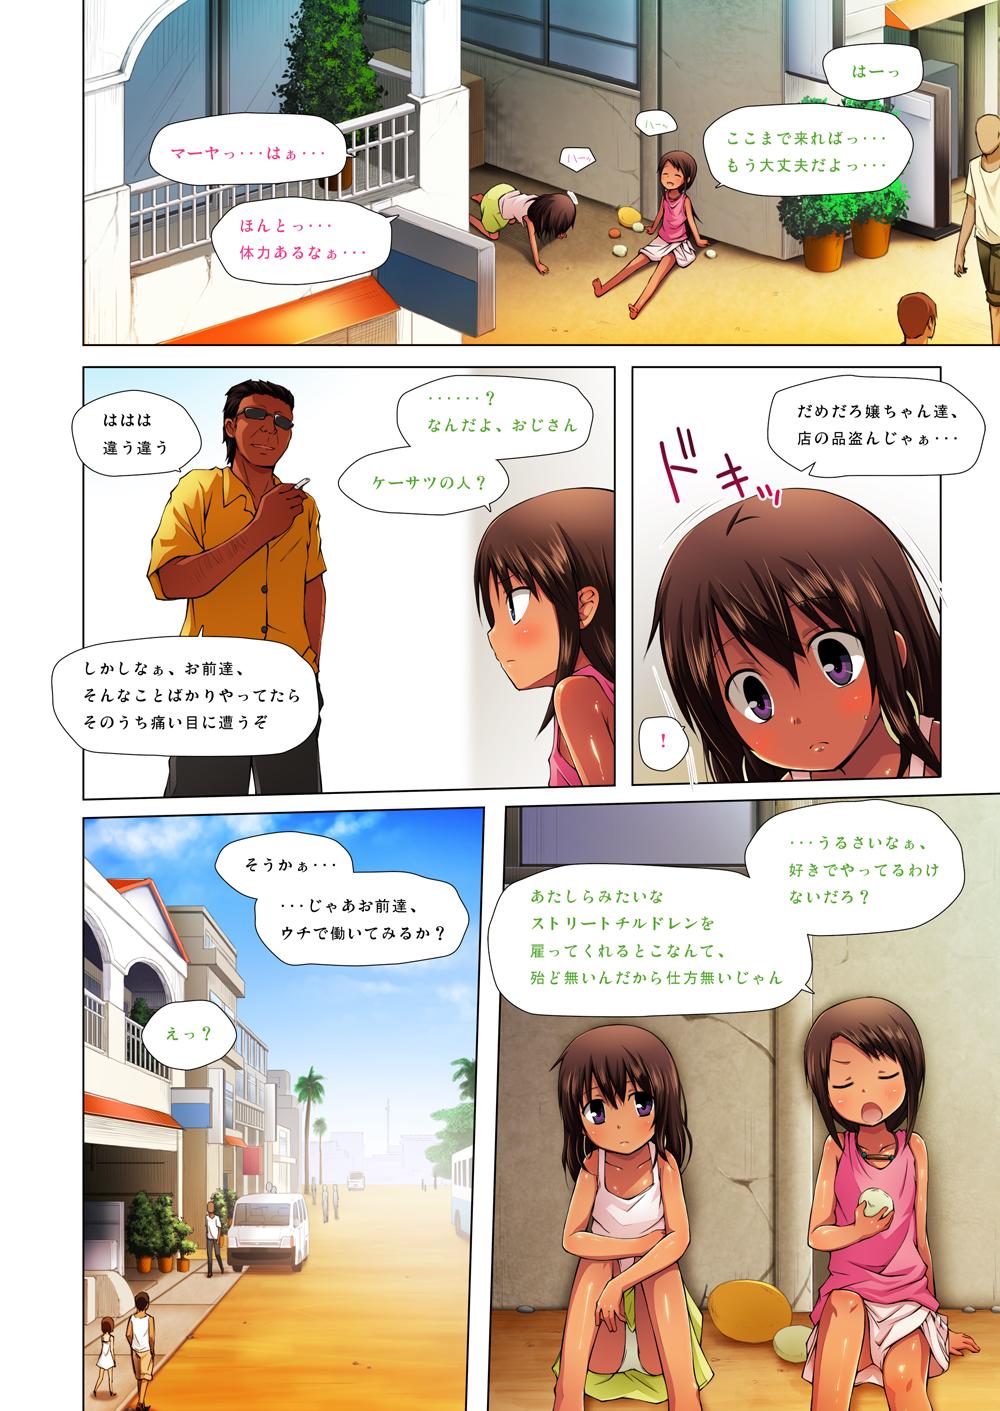 Exgf Kago no Naka no Kotori wa Itsu Deyaru 0 Full Color Passion - Page 3